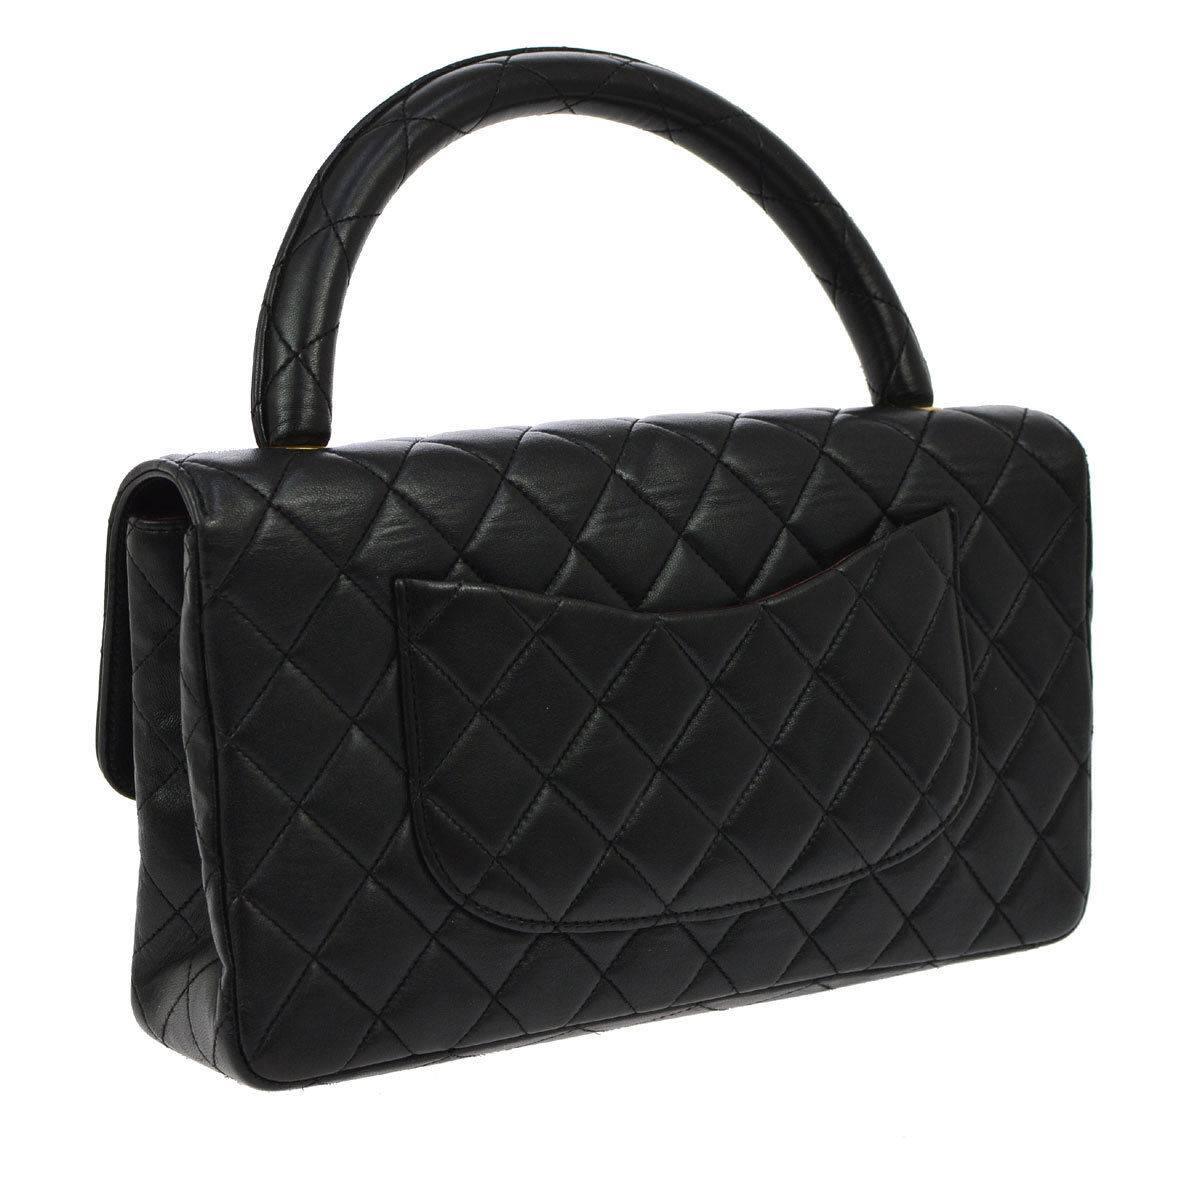 k_elly style women’s designer top handle satchel